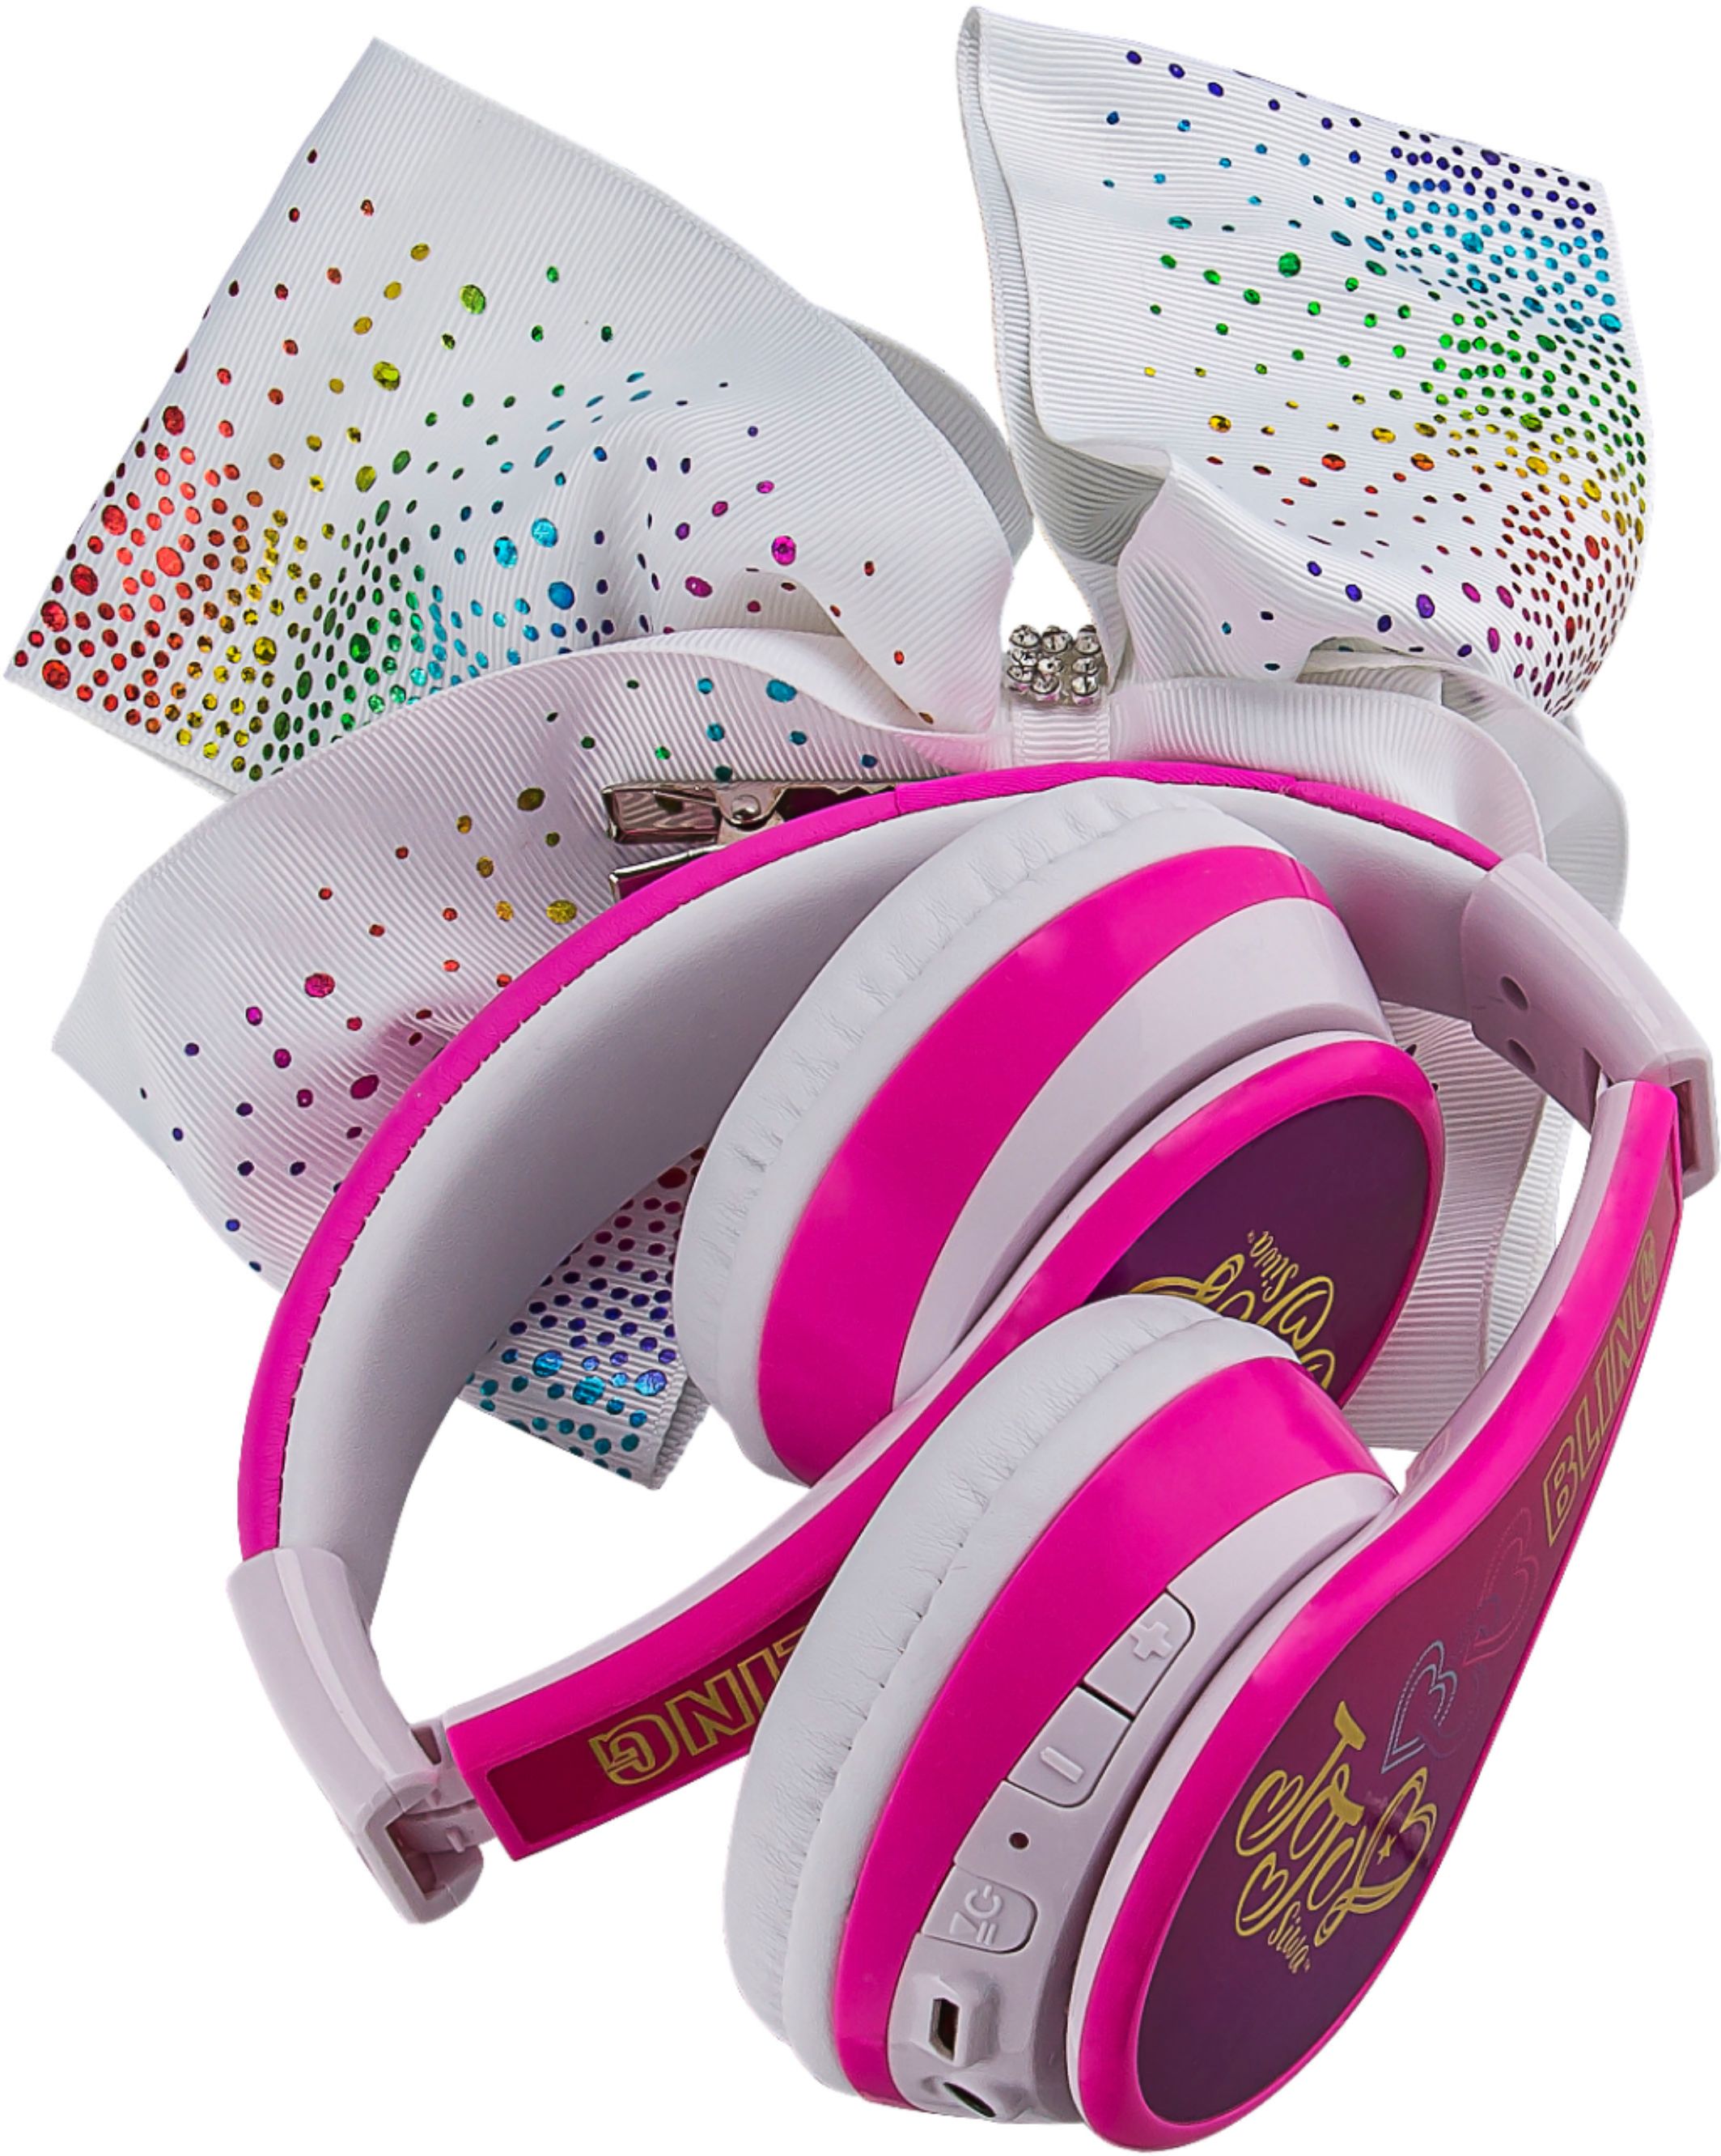 Best Buy: eKids JoJo Siwa Wireless Over the Ear Headphones pink